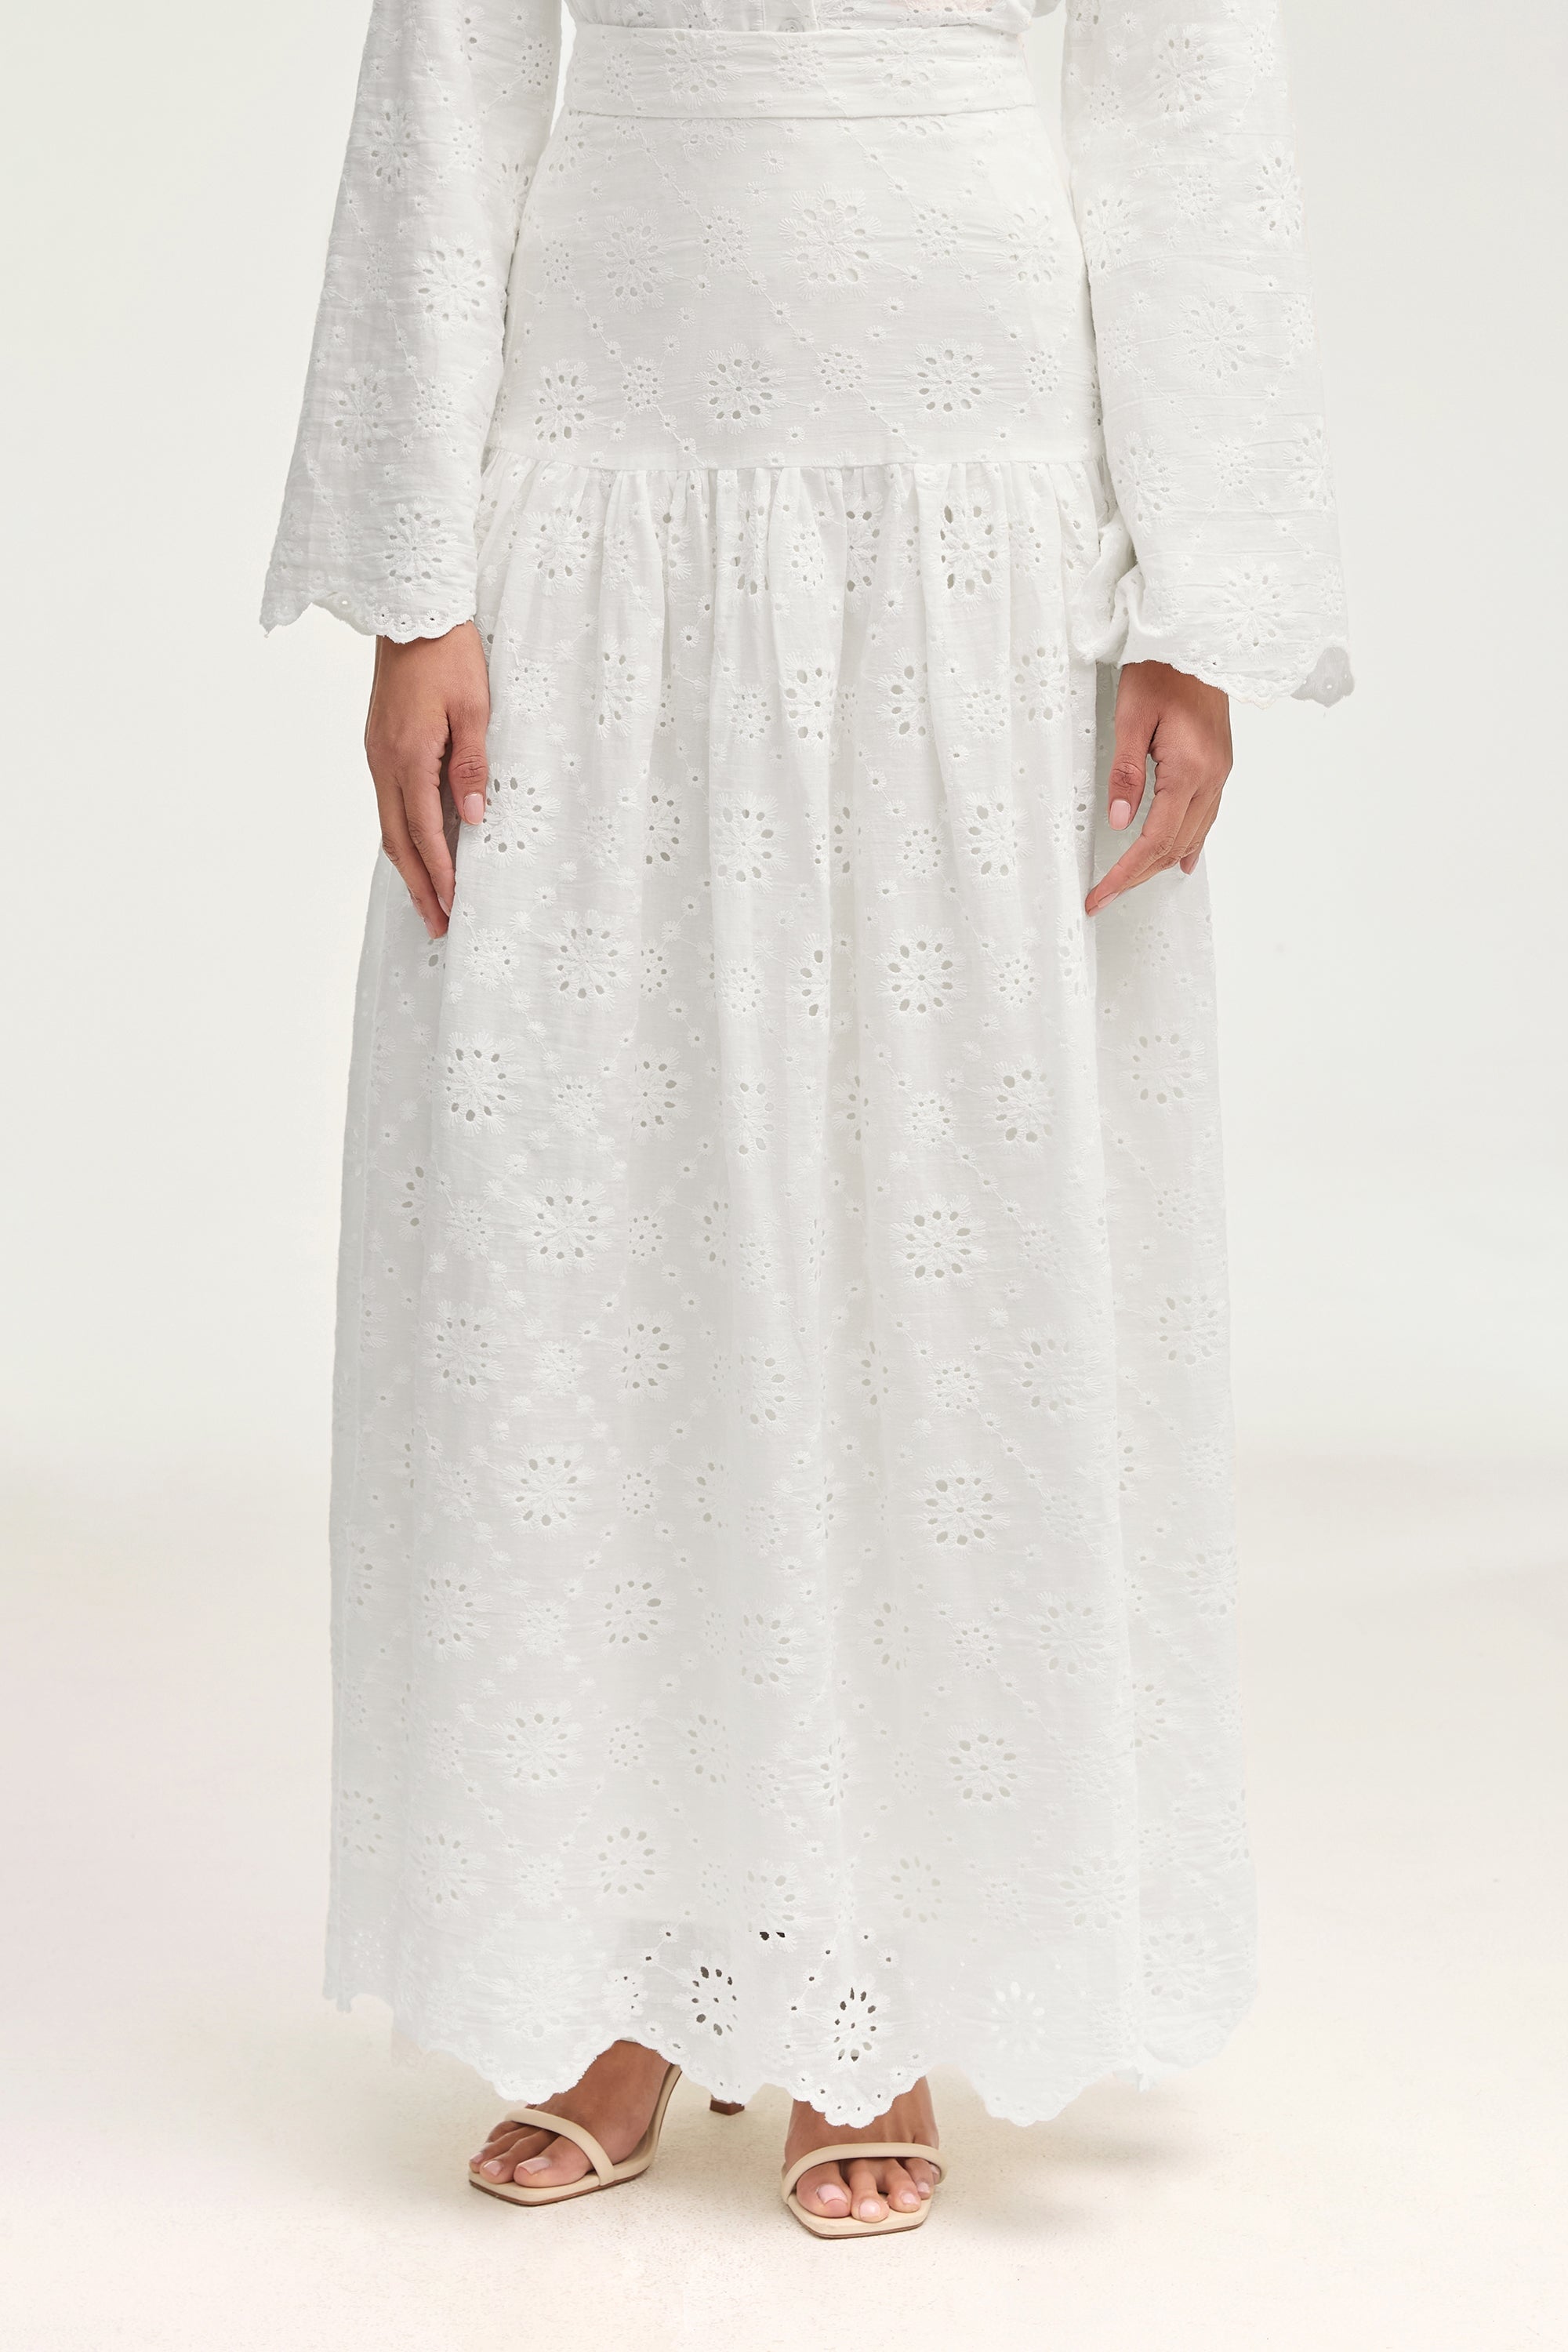 Halima White Eyelet Maxi Skirt Clothing epschoolboard 